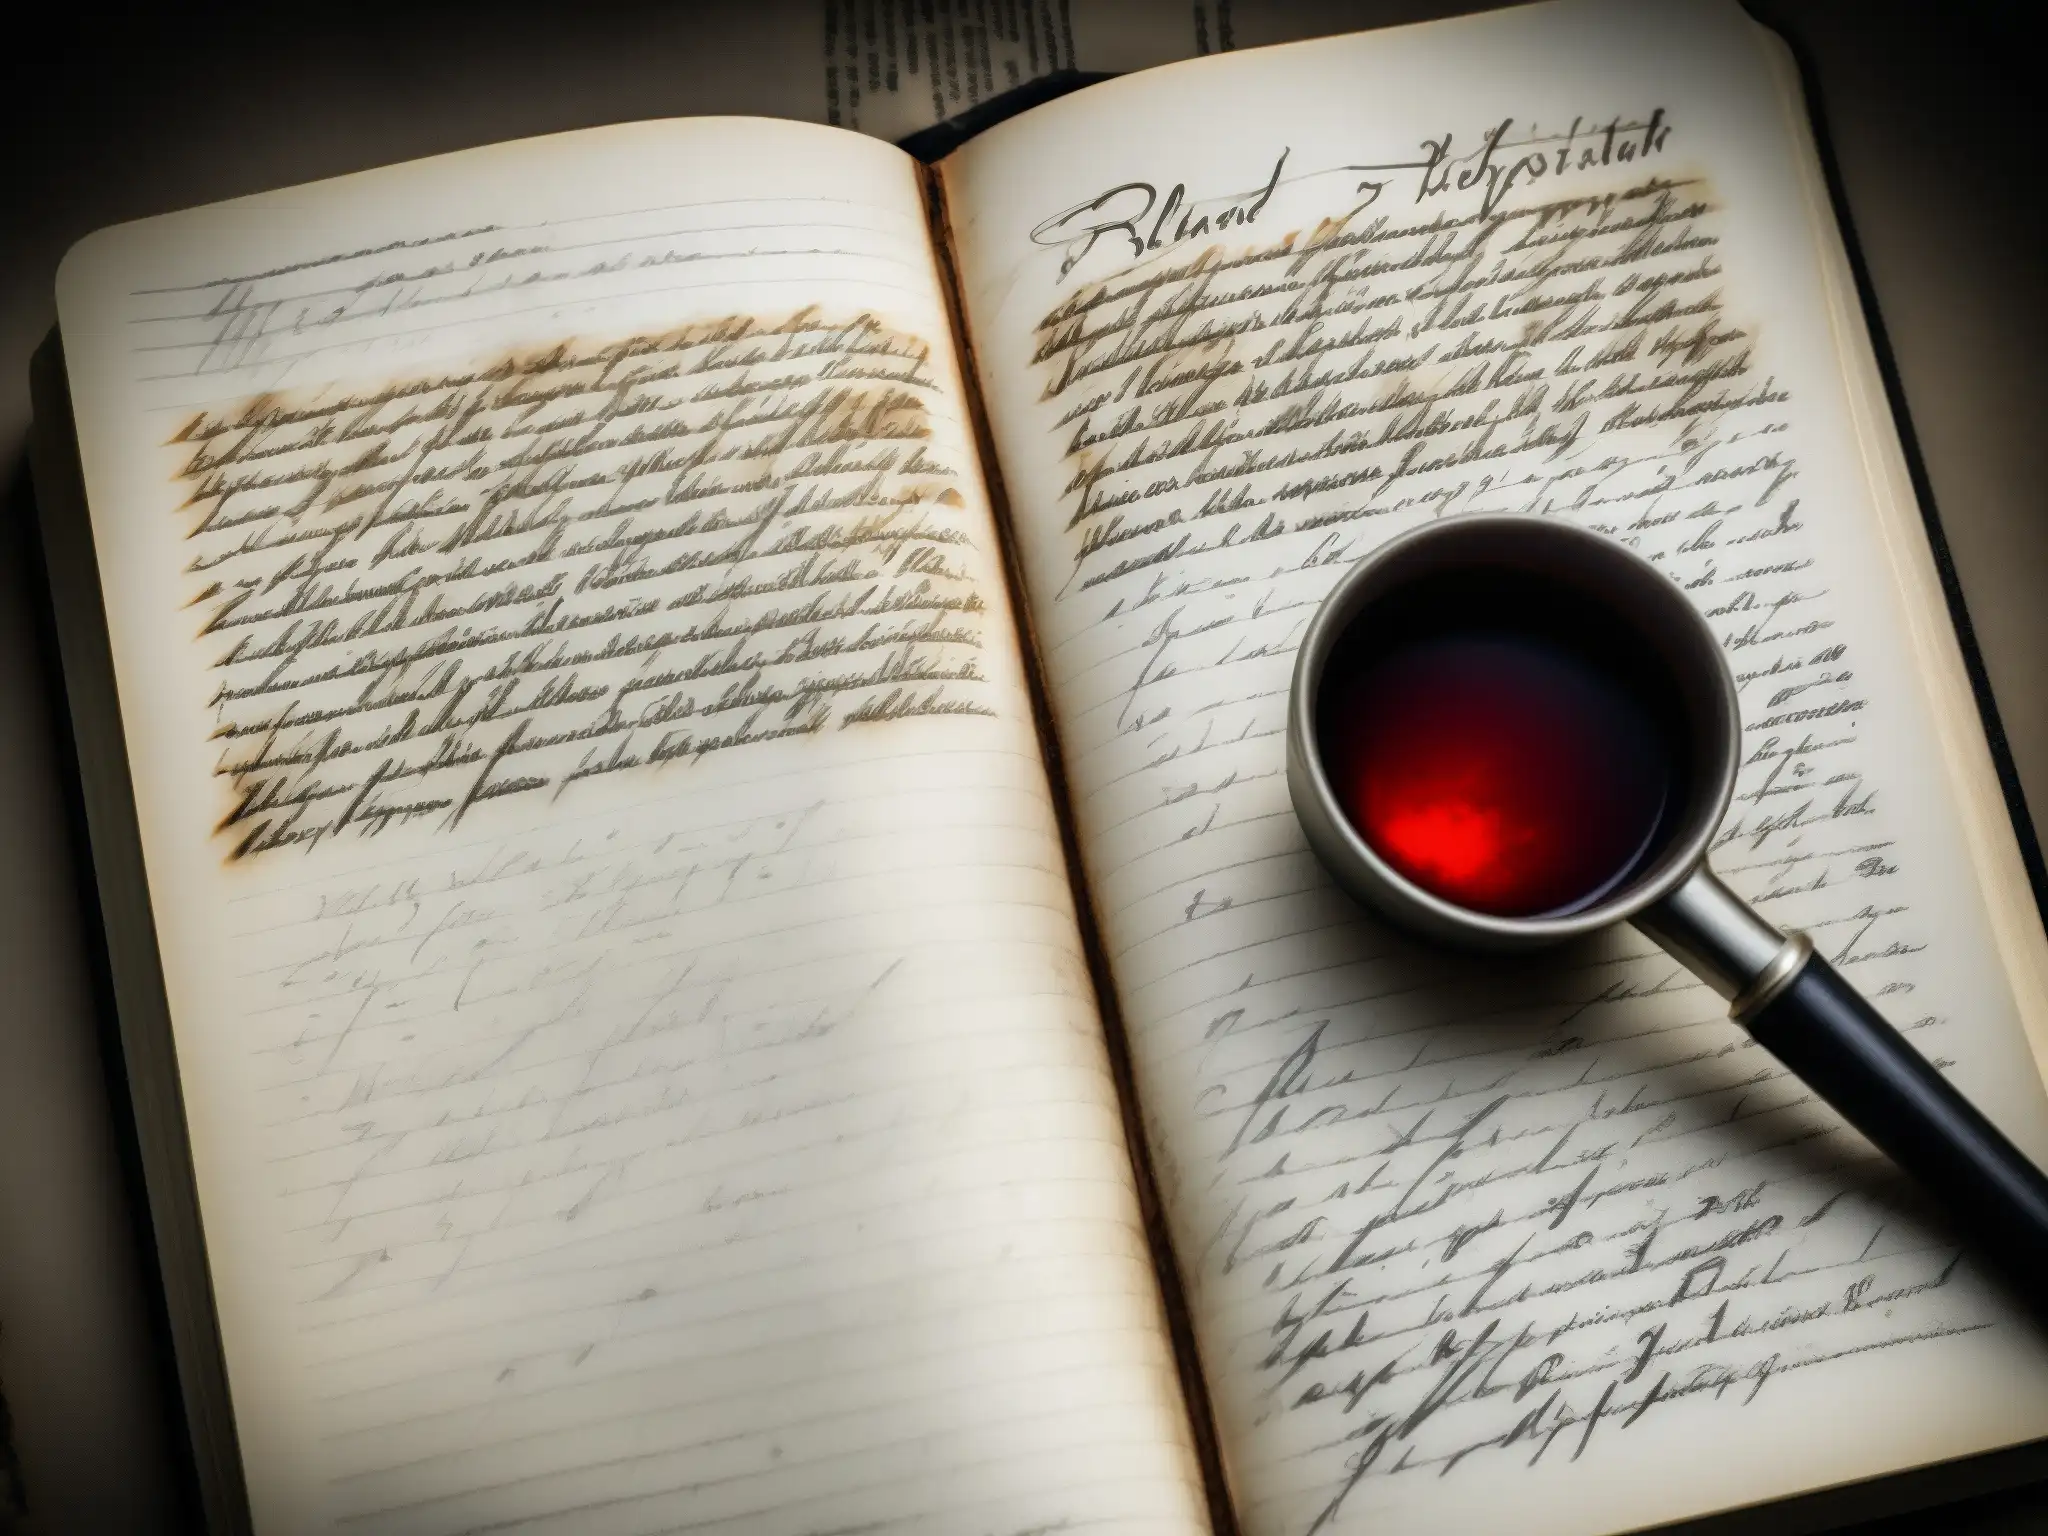 Diario manuscrito de Richard Chase, con escritos perturbadores, manchas de sangre y dibujos inquietantes